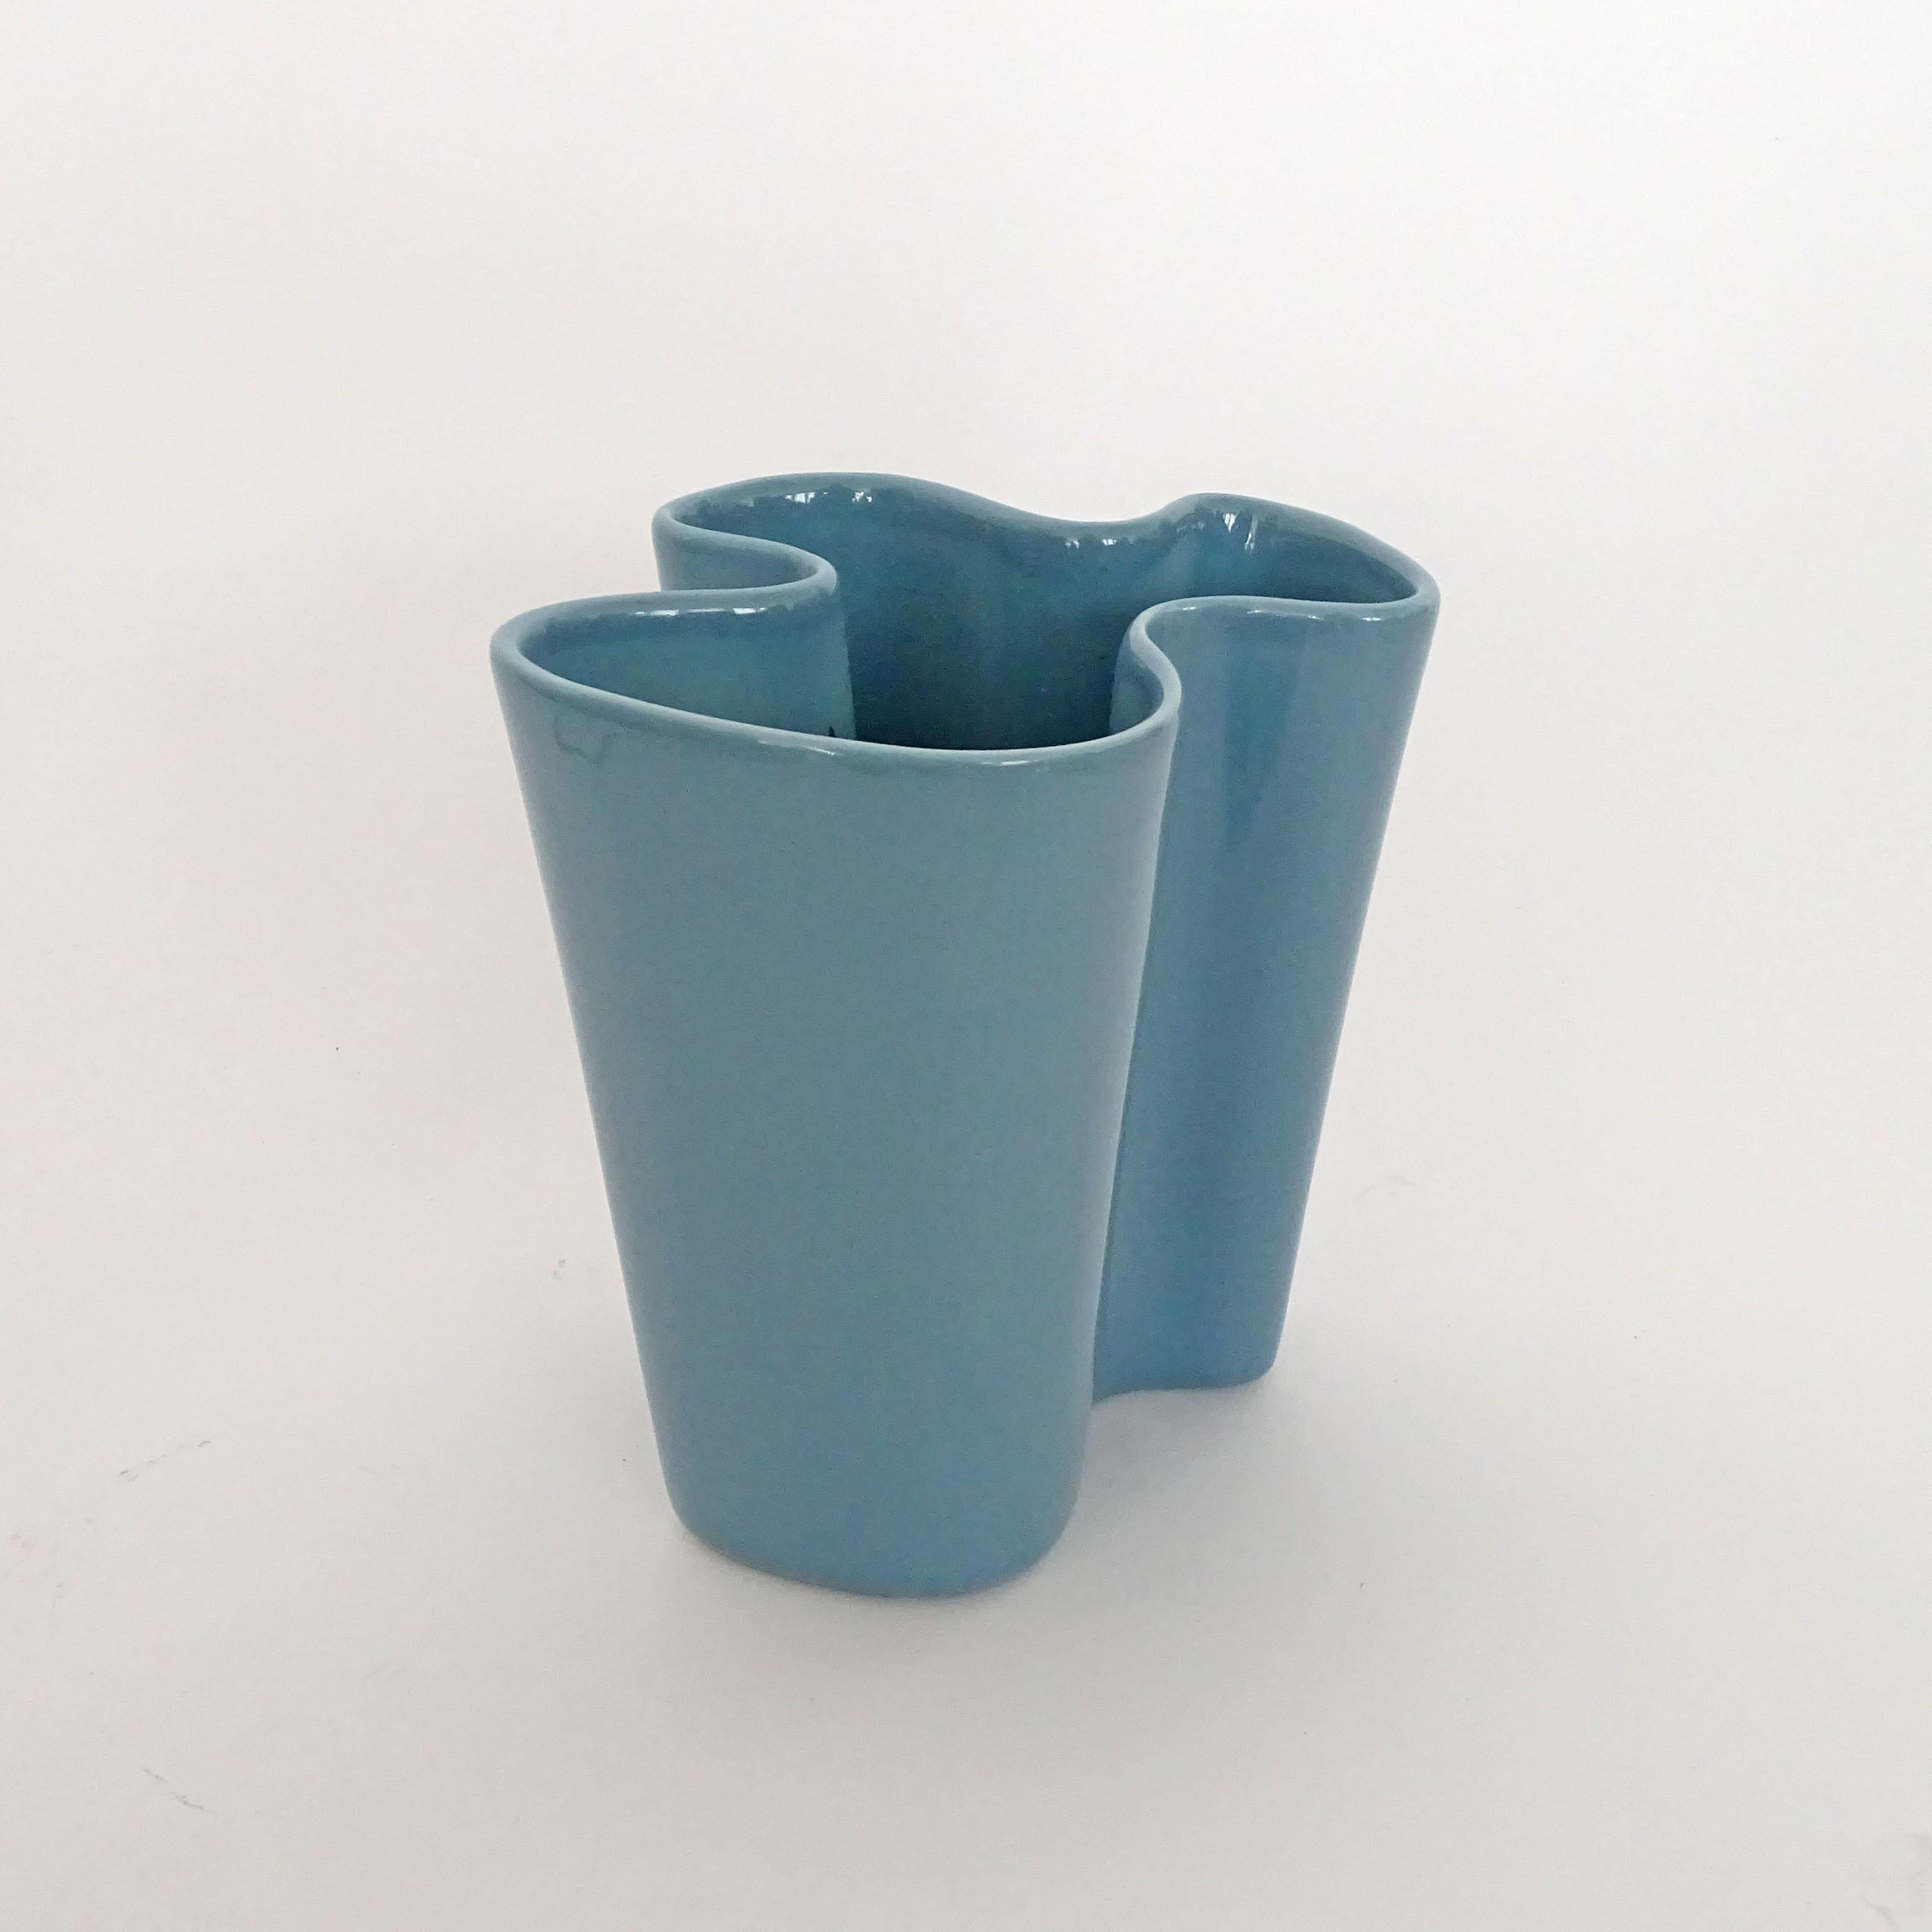 Italian 1950s Biomorphic petrol blue Ceramic vase For Sale 2